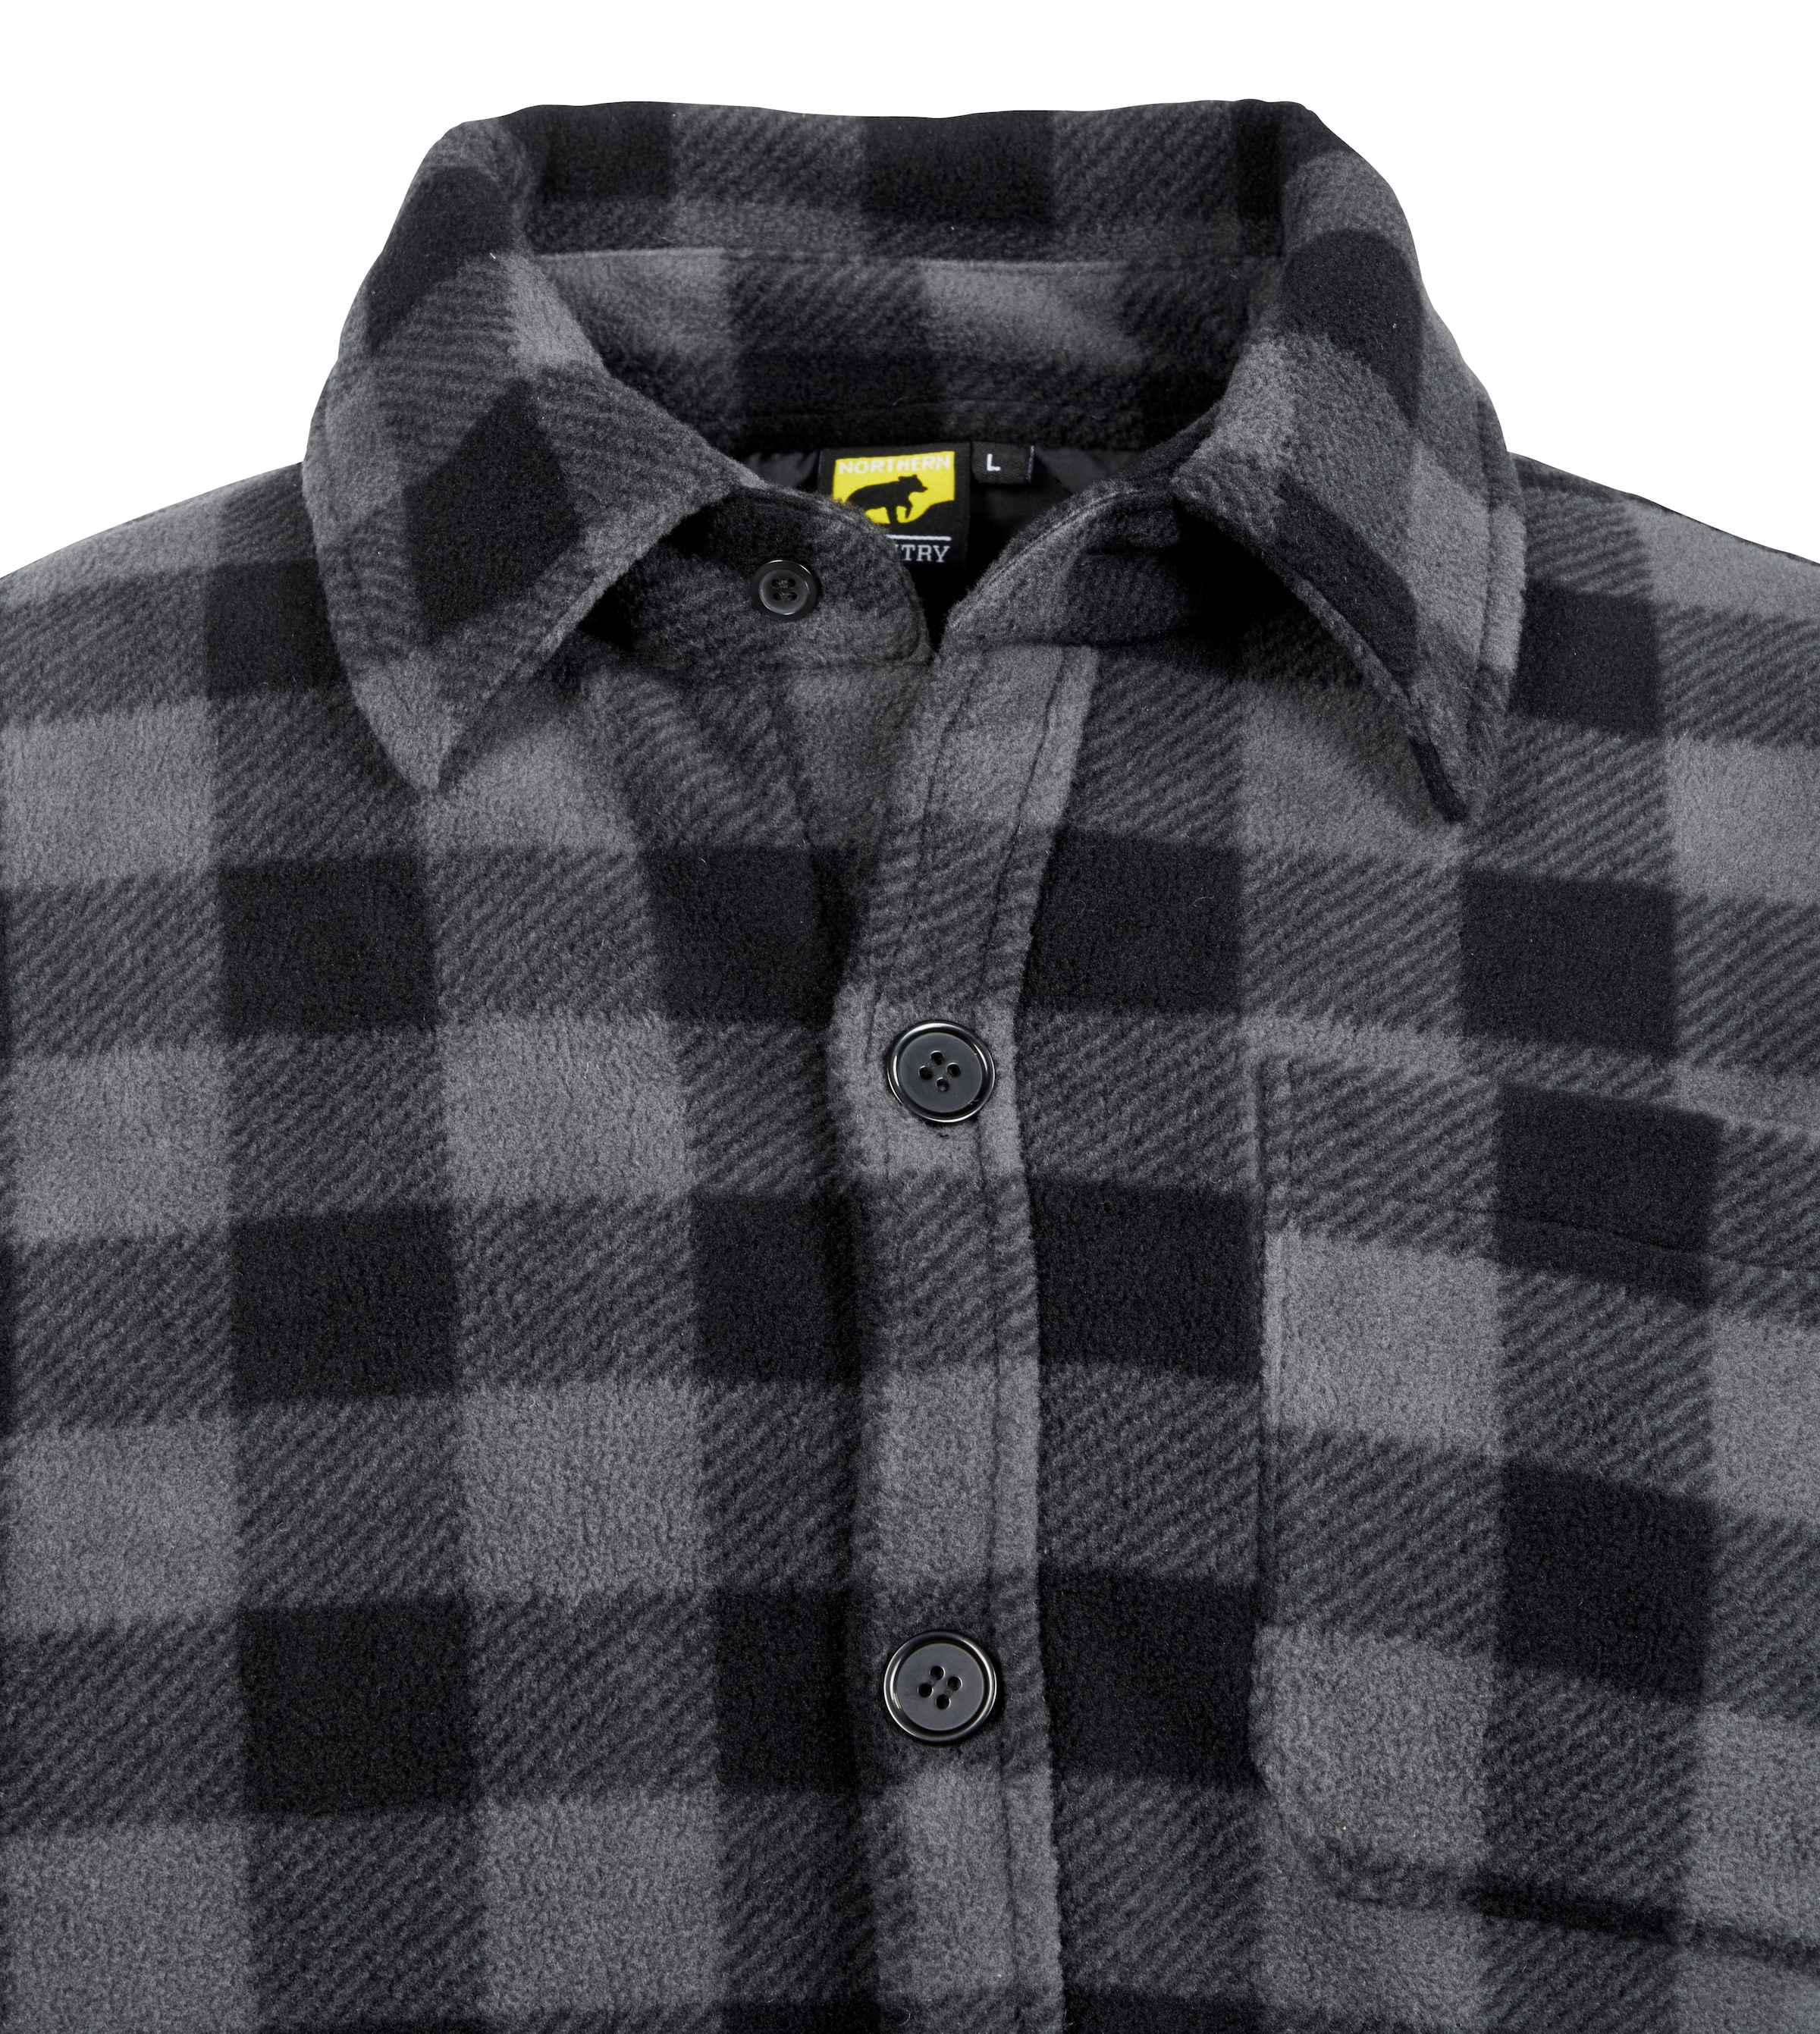 Northern Country Flanellhemd, (als Hemd gefüttert, verlängertem oder | tragen), warm mit Flanellstoff zu 5 OTTO Taschen, Rücken, Jacke mit offen zugeknöpft